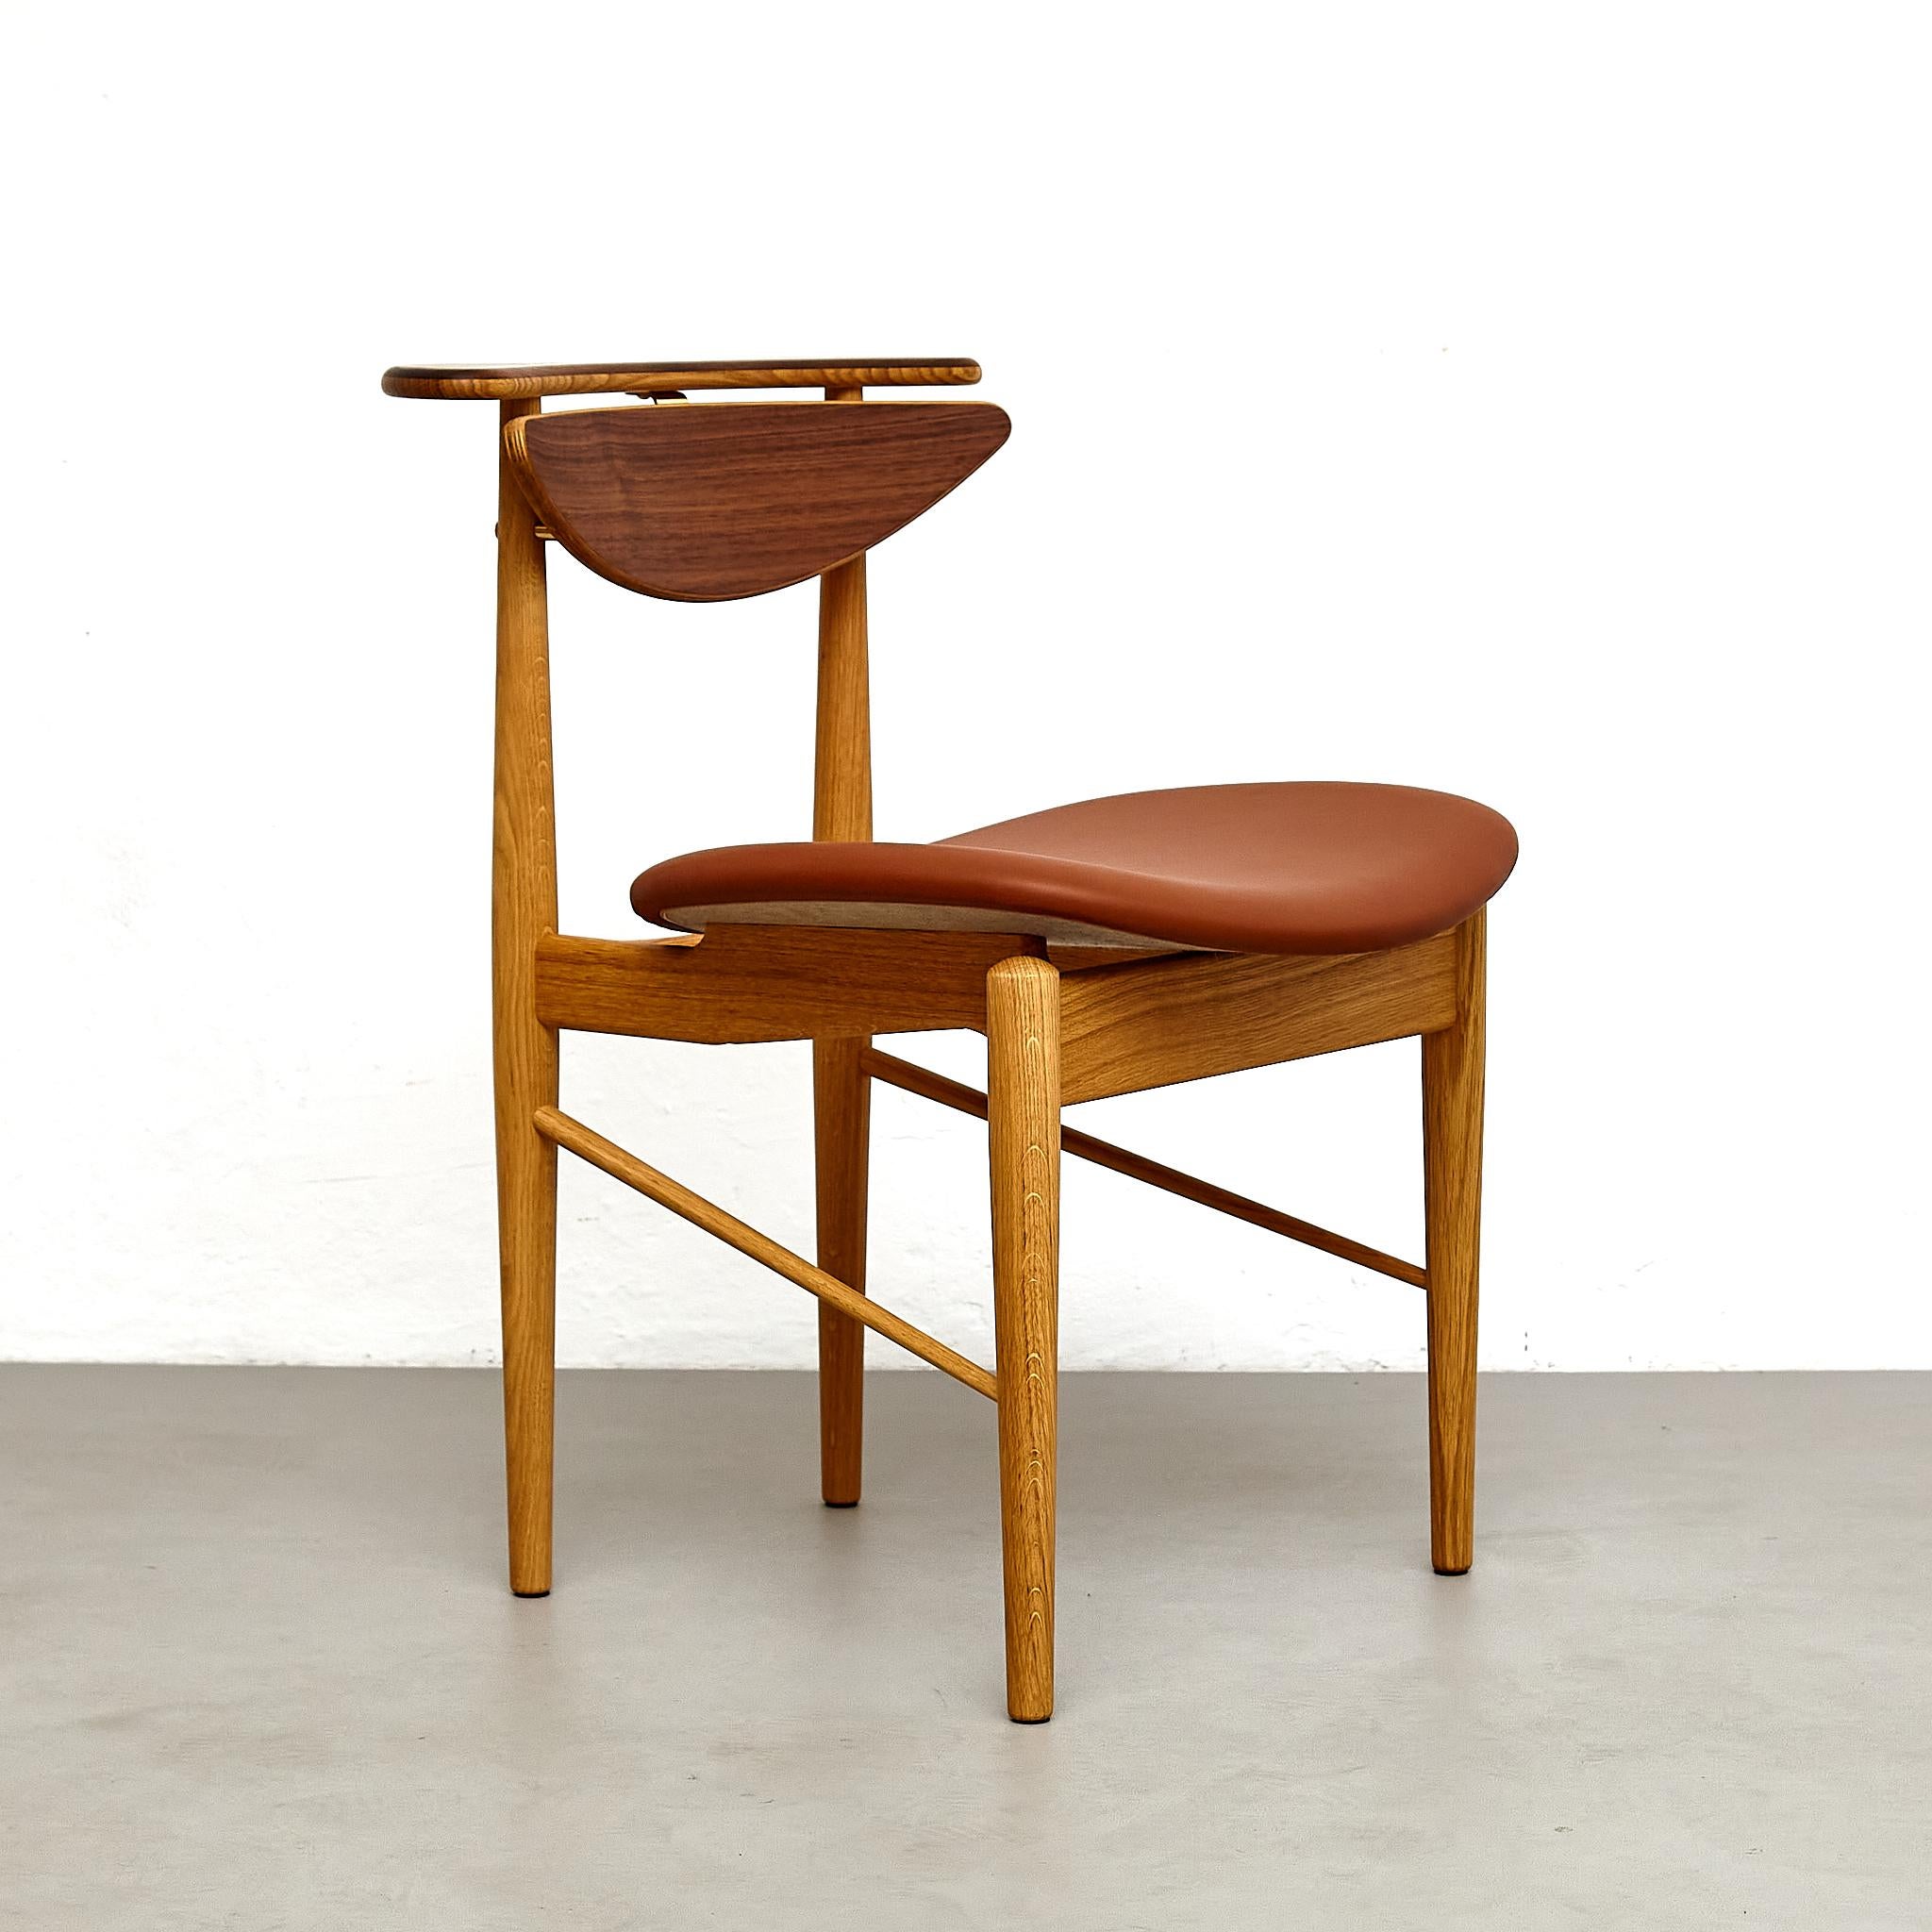 Chaise conçue par Finn Juhls en 1953, relancée en 2015.

Fabriqué par la Maison Finn Juhl au Danemark.

Matériaux : 
Bois, cuir

Dimensions : 
P 58 cm x L 52 cm x H 74 cm. (SH 45 cm.)

La chaise Reading est l'une des pièces les plus simples mais les